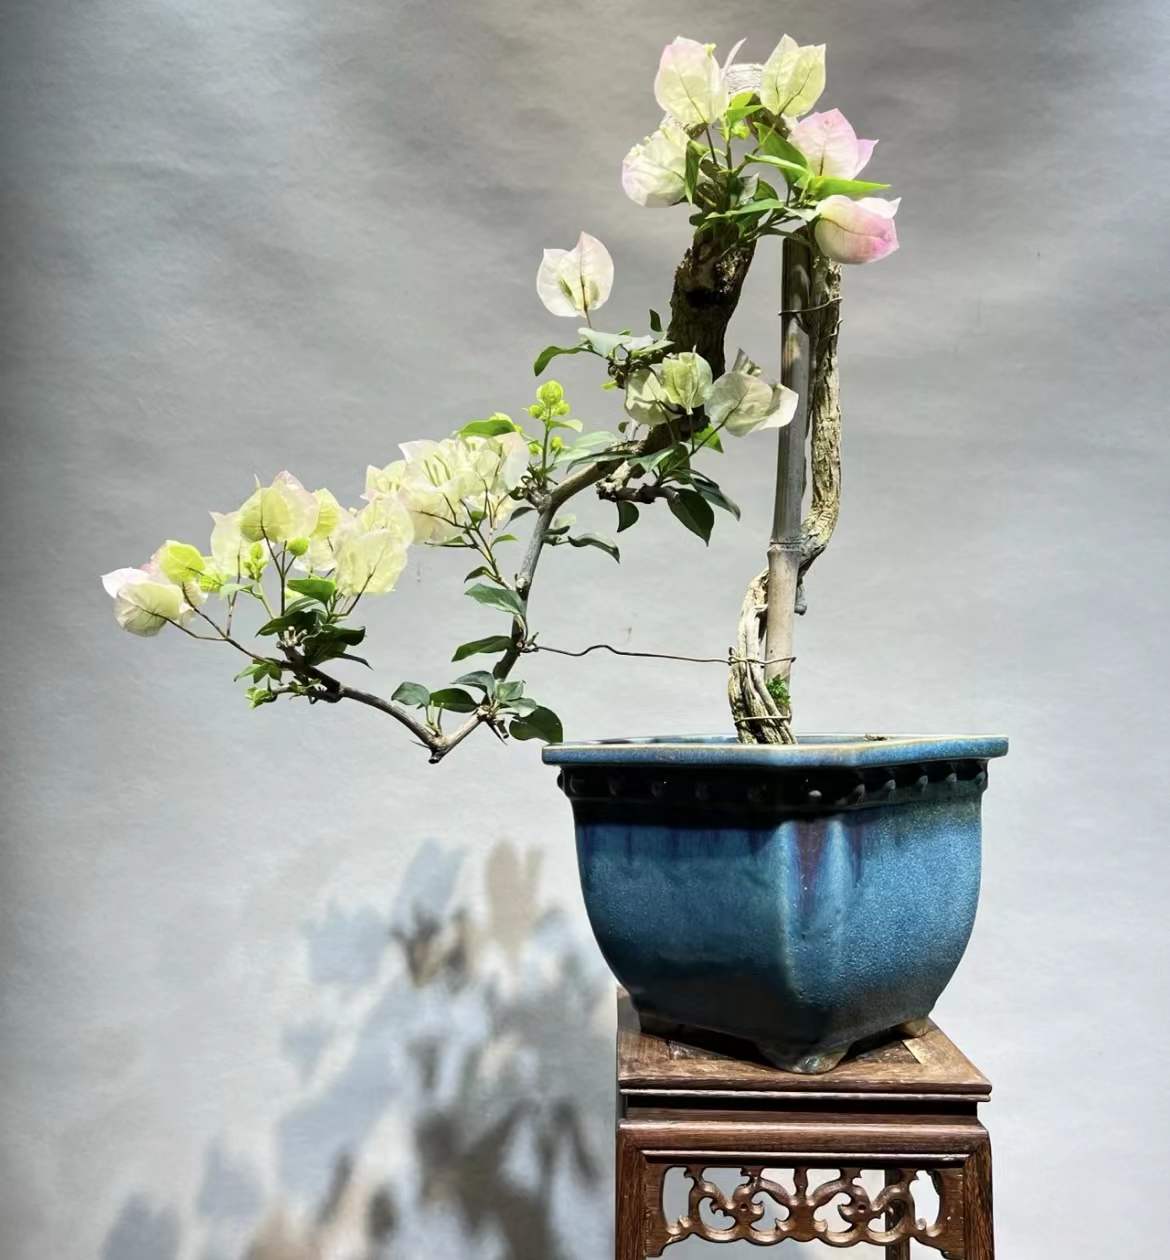 亚马逊悬挂盆栽组合 仿真盆栽垂条盆景 室内装饰家居壁挂装饰植物-阿里巴巴